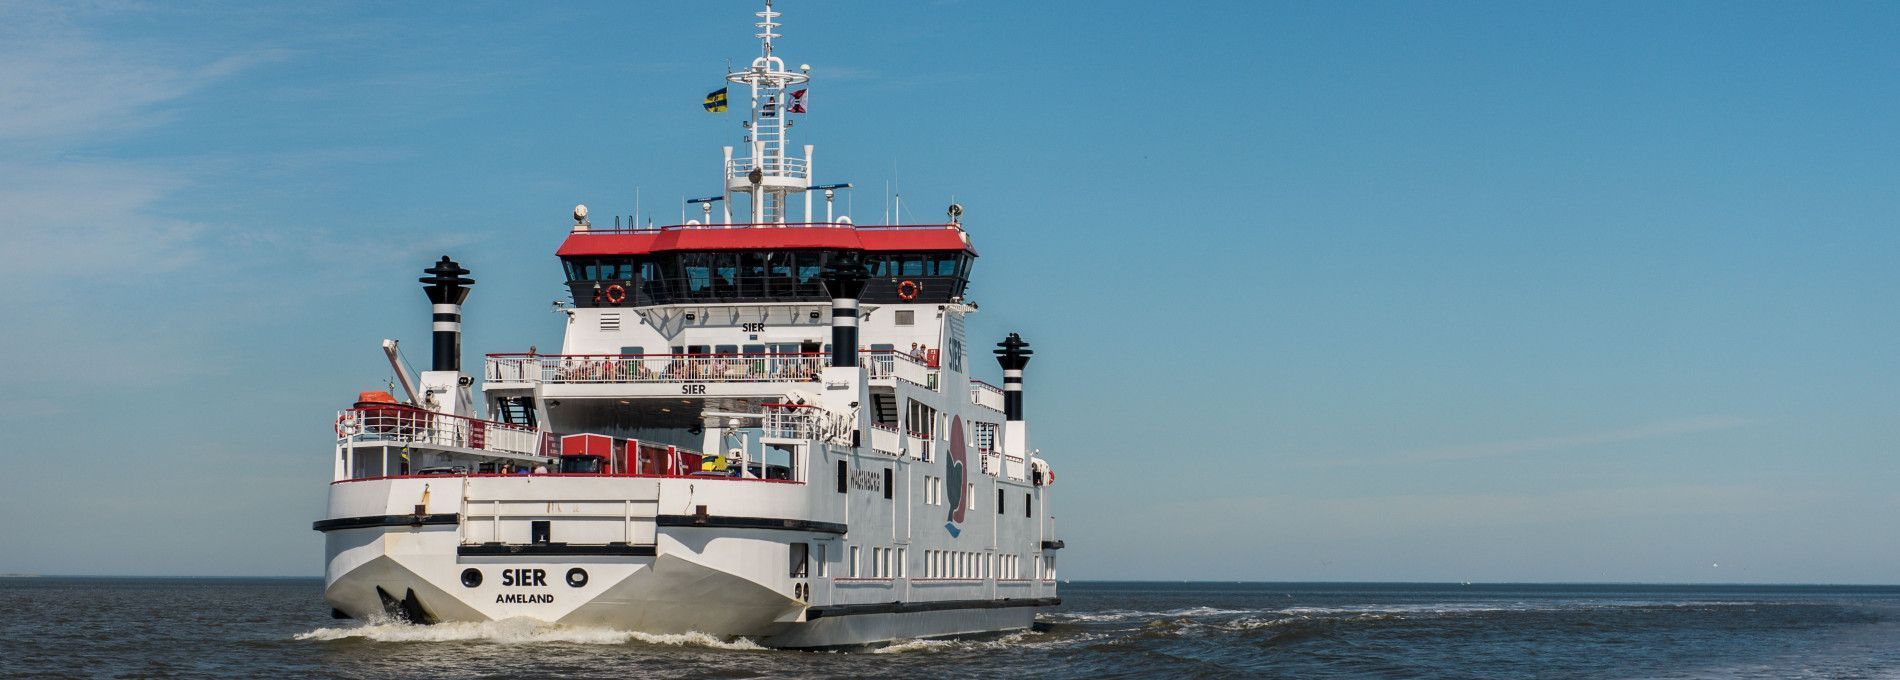 Tariffs ferry Ameland-Holwerd - Tourist Information Centre 